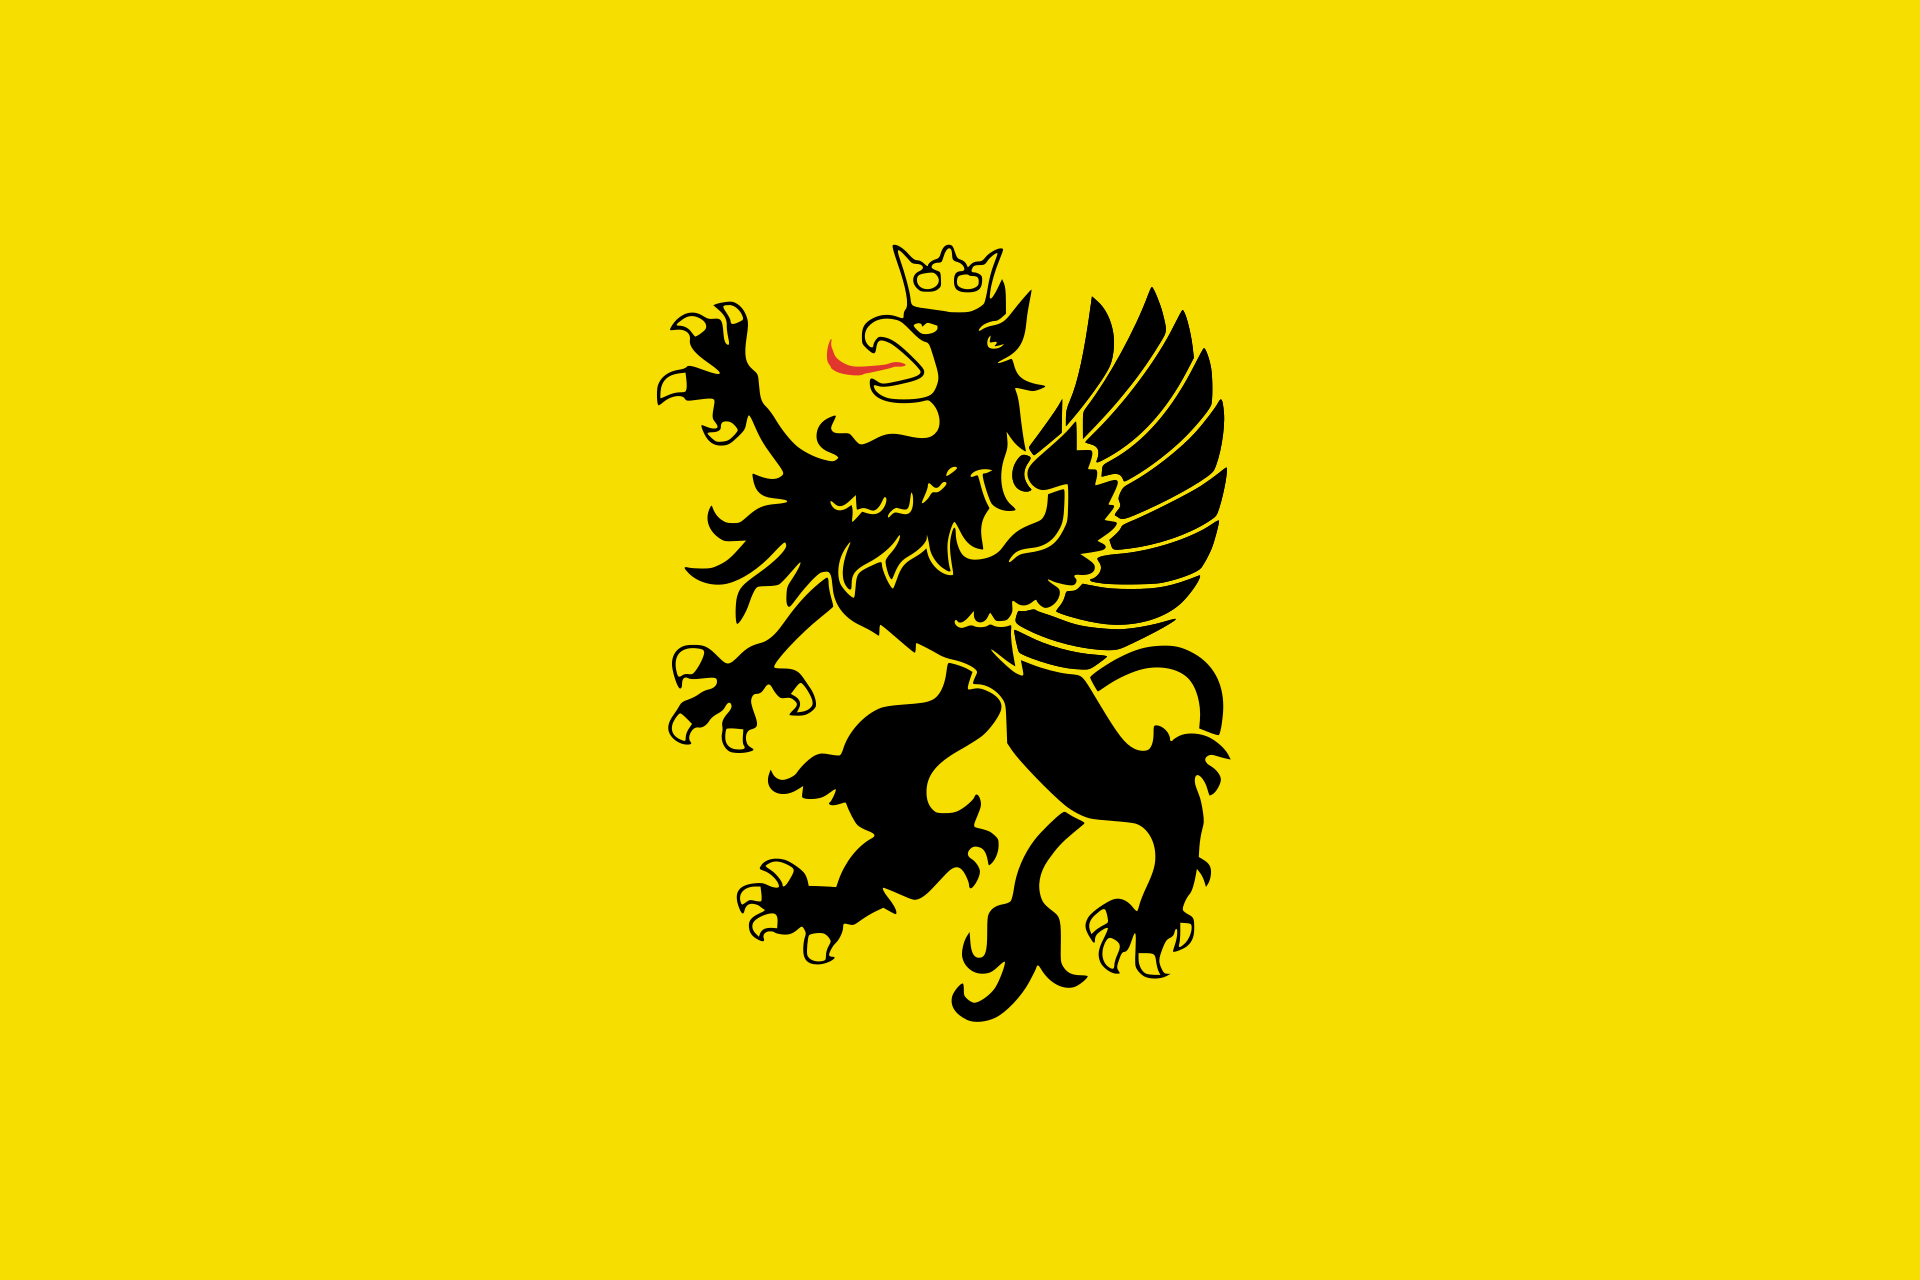 Flaga Kaszub z godłem. Fot. Wikimedia Commons.